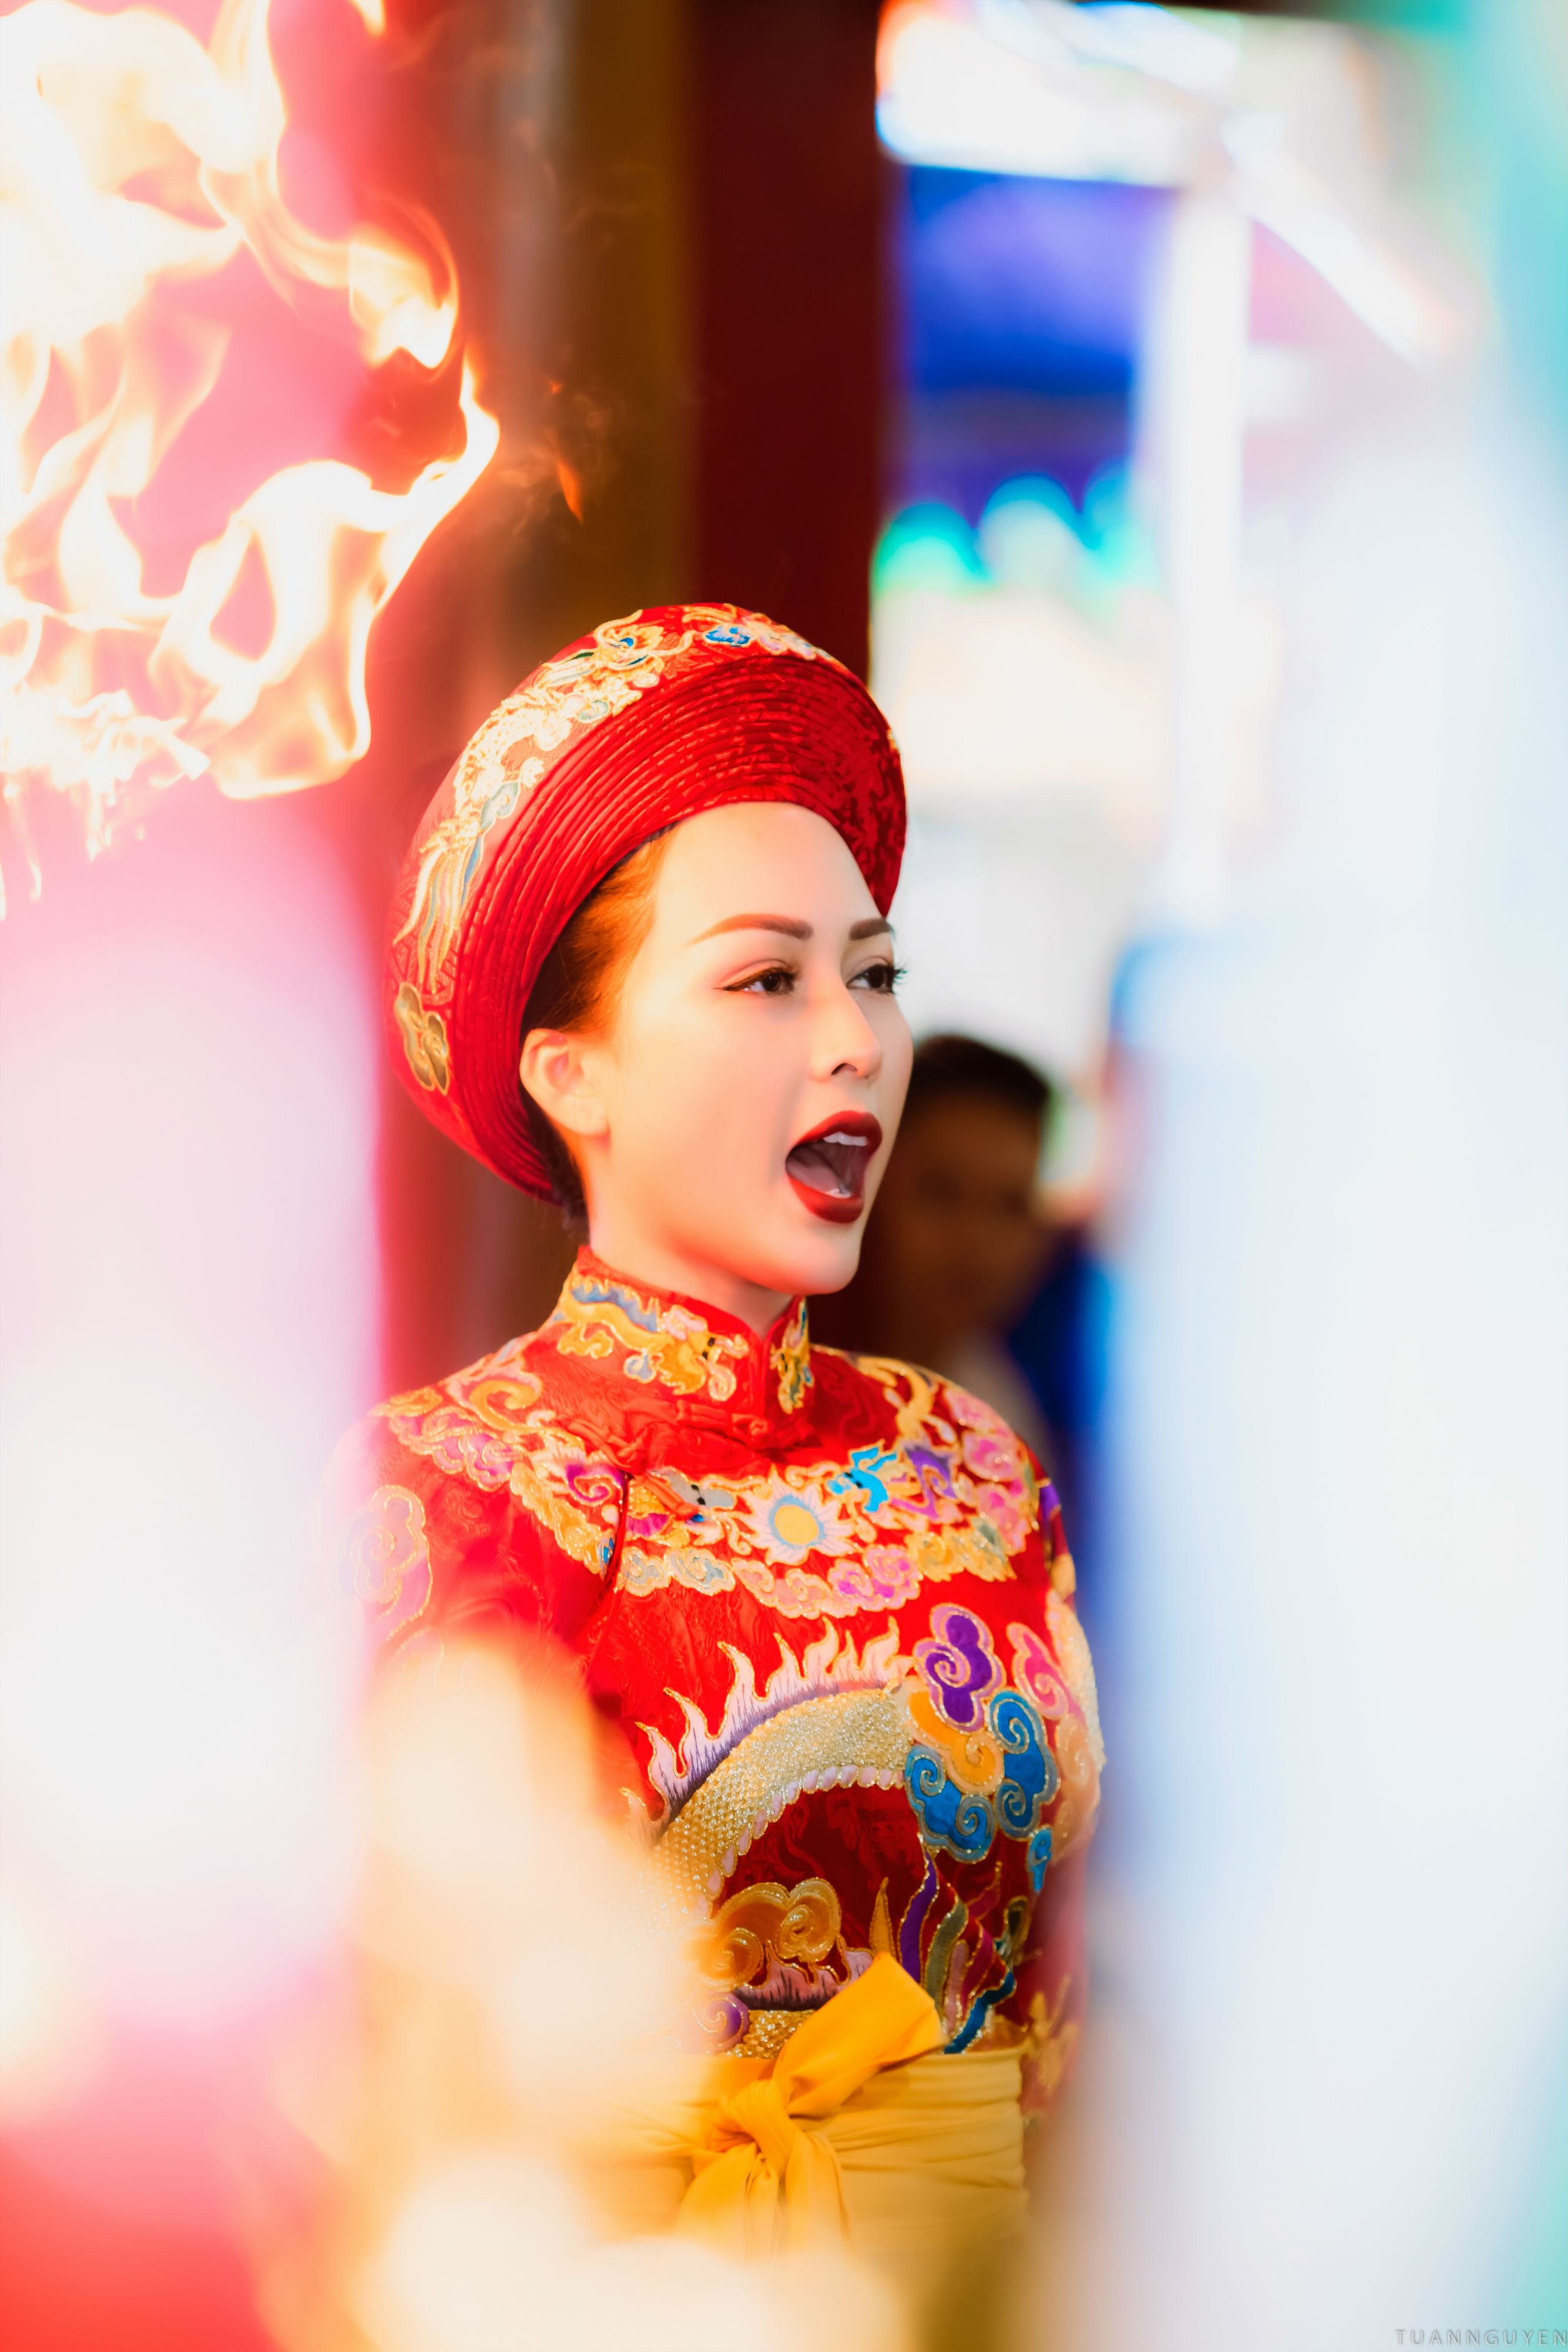 Võ Thanh Hiền tốt nghiệp Học viện Báo chí Tuyên truyền, cô trở thành MC và sau đó “bén duyên” với nghiệp diễn xuất. 